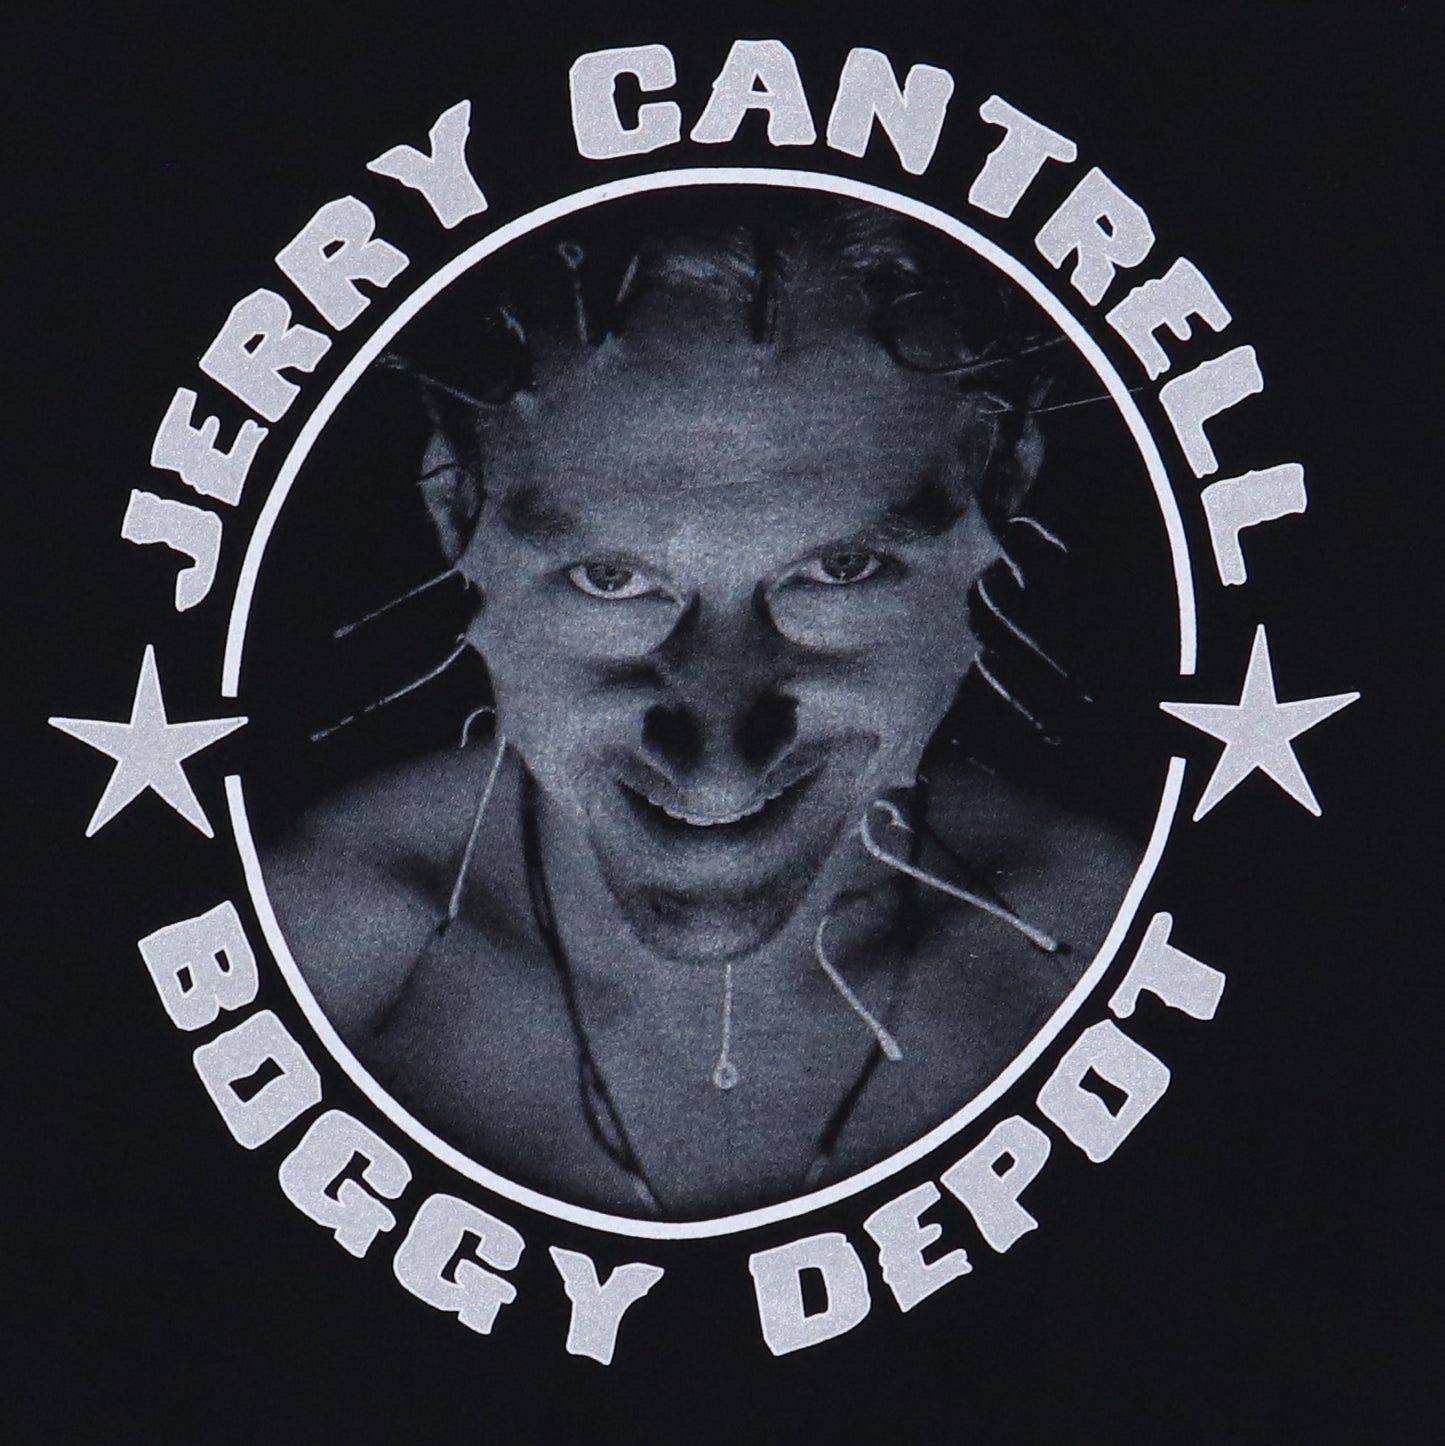 1998 Jerry Cantrell Bobby Depot Shirt